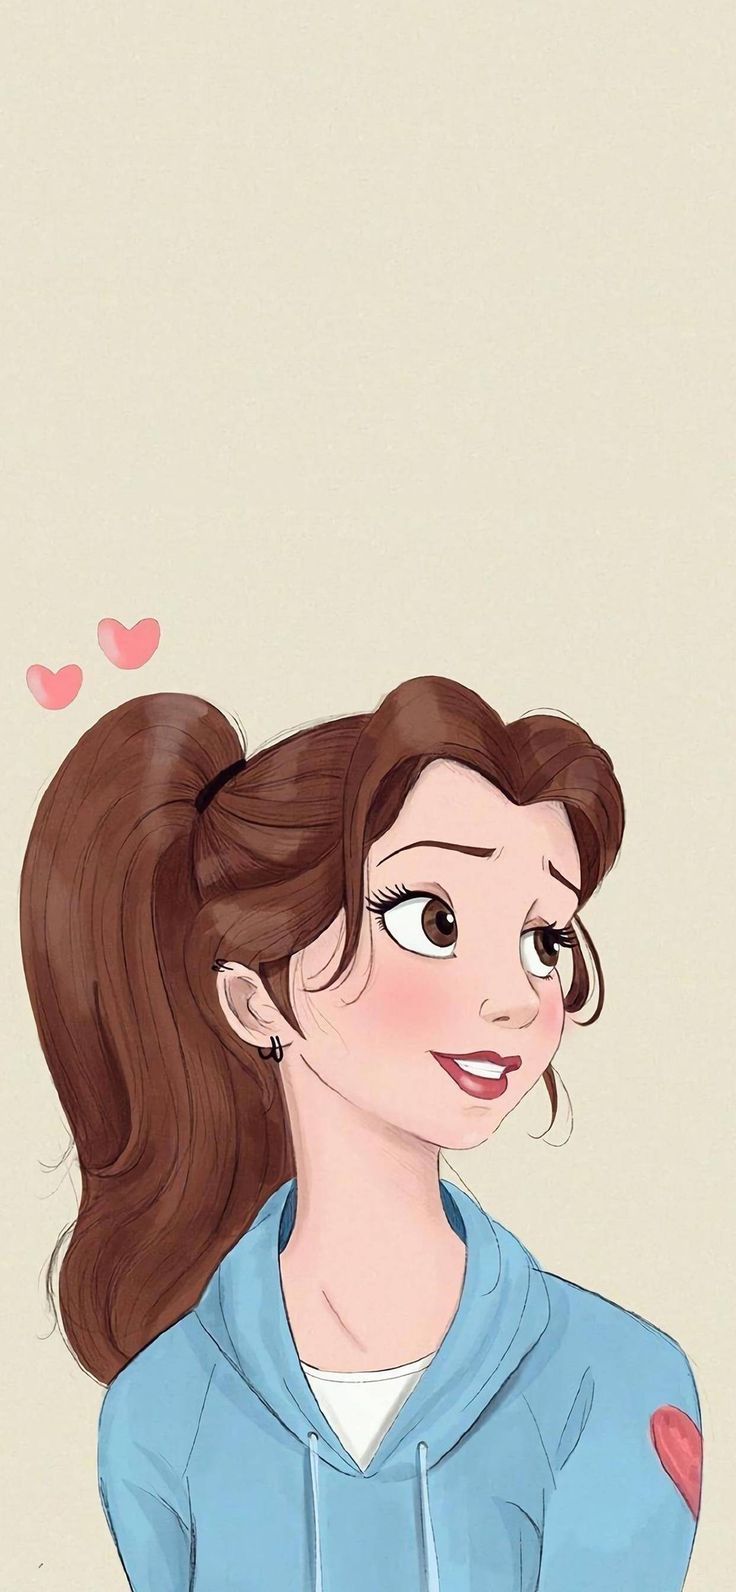 Disney 2021 em 2021. Wallpaper bonitos, Princesas disney,. Wallpaper iphone disney princess, Cute disney wallpaper, Disney princess art